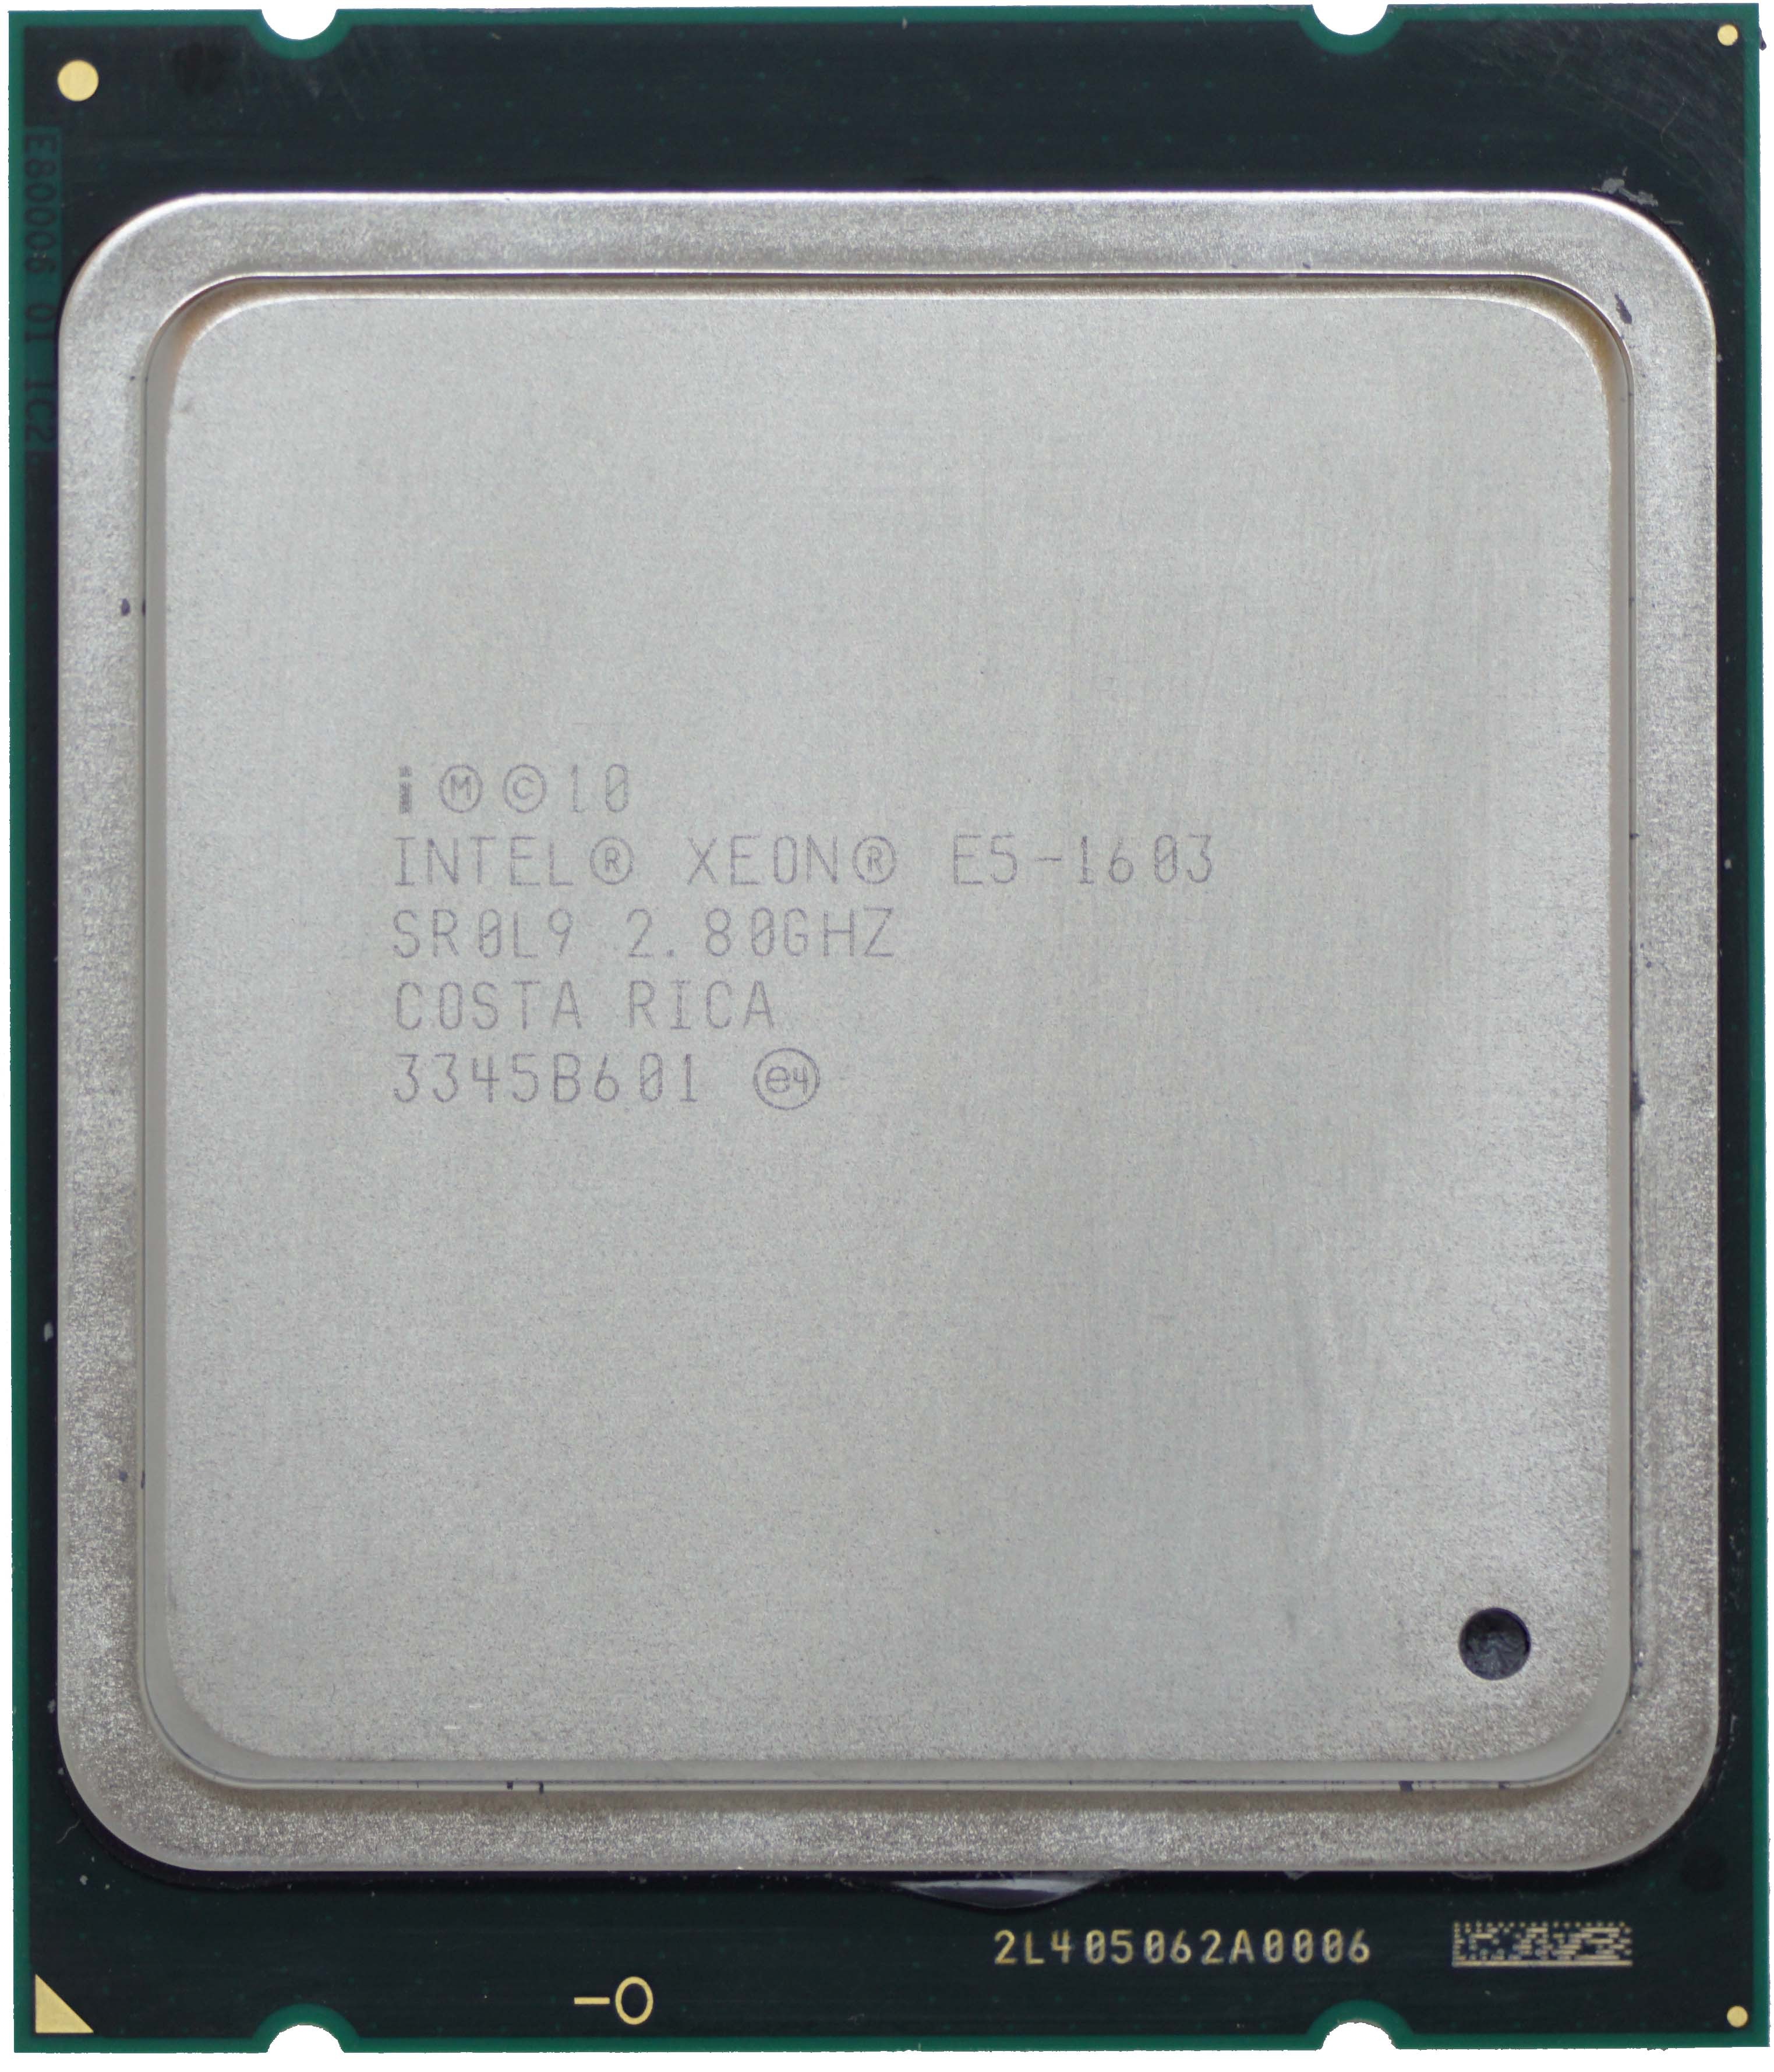 Intel Xeon E5-1603 V1 (SR0L9) 2.80GHz  4-Core LGA2011 130W 10MB CPU CPU0000292